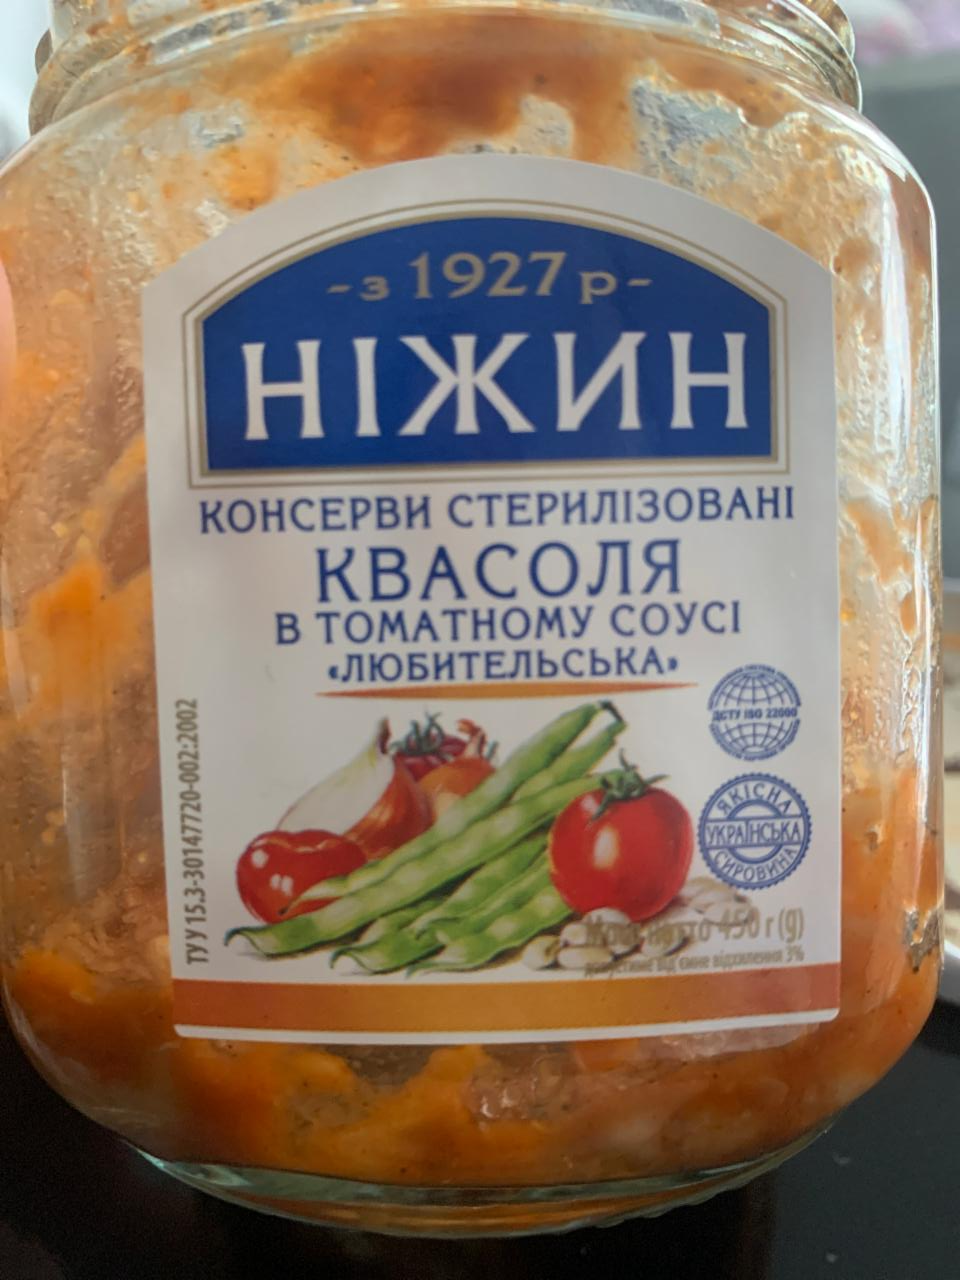 Фото - Фасоль в томатном соусе Любительська Ніжин